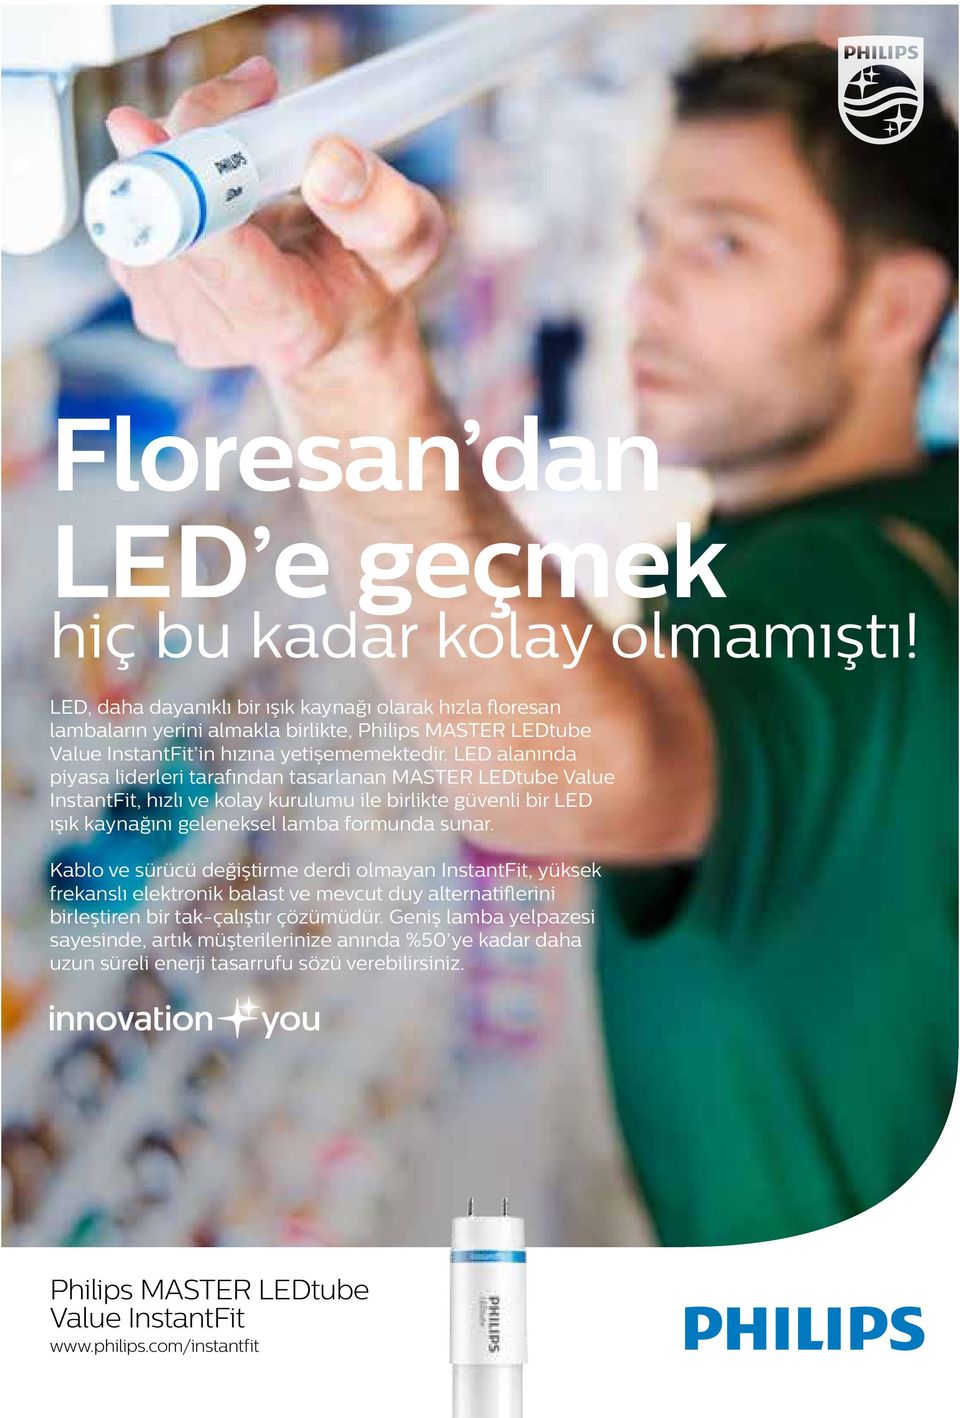 LED alanında piyasa liderleri tarafından tasarlanan MASTER LEDtube Value InstantFit, hızlı ve kolay kurulumu ile birlikte güvenli bir LED ışık kaynağını geleneksel lamba formunda sunar.